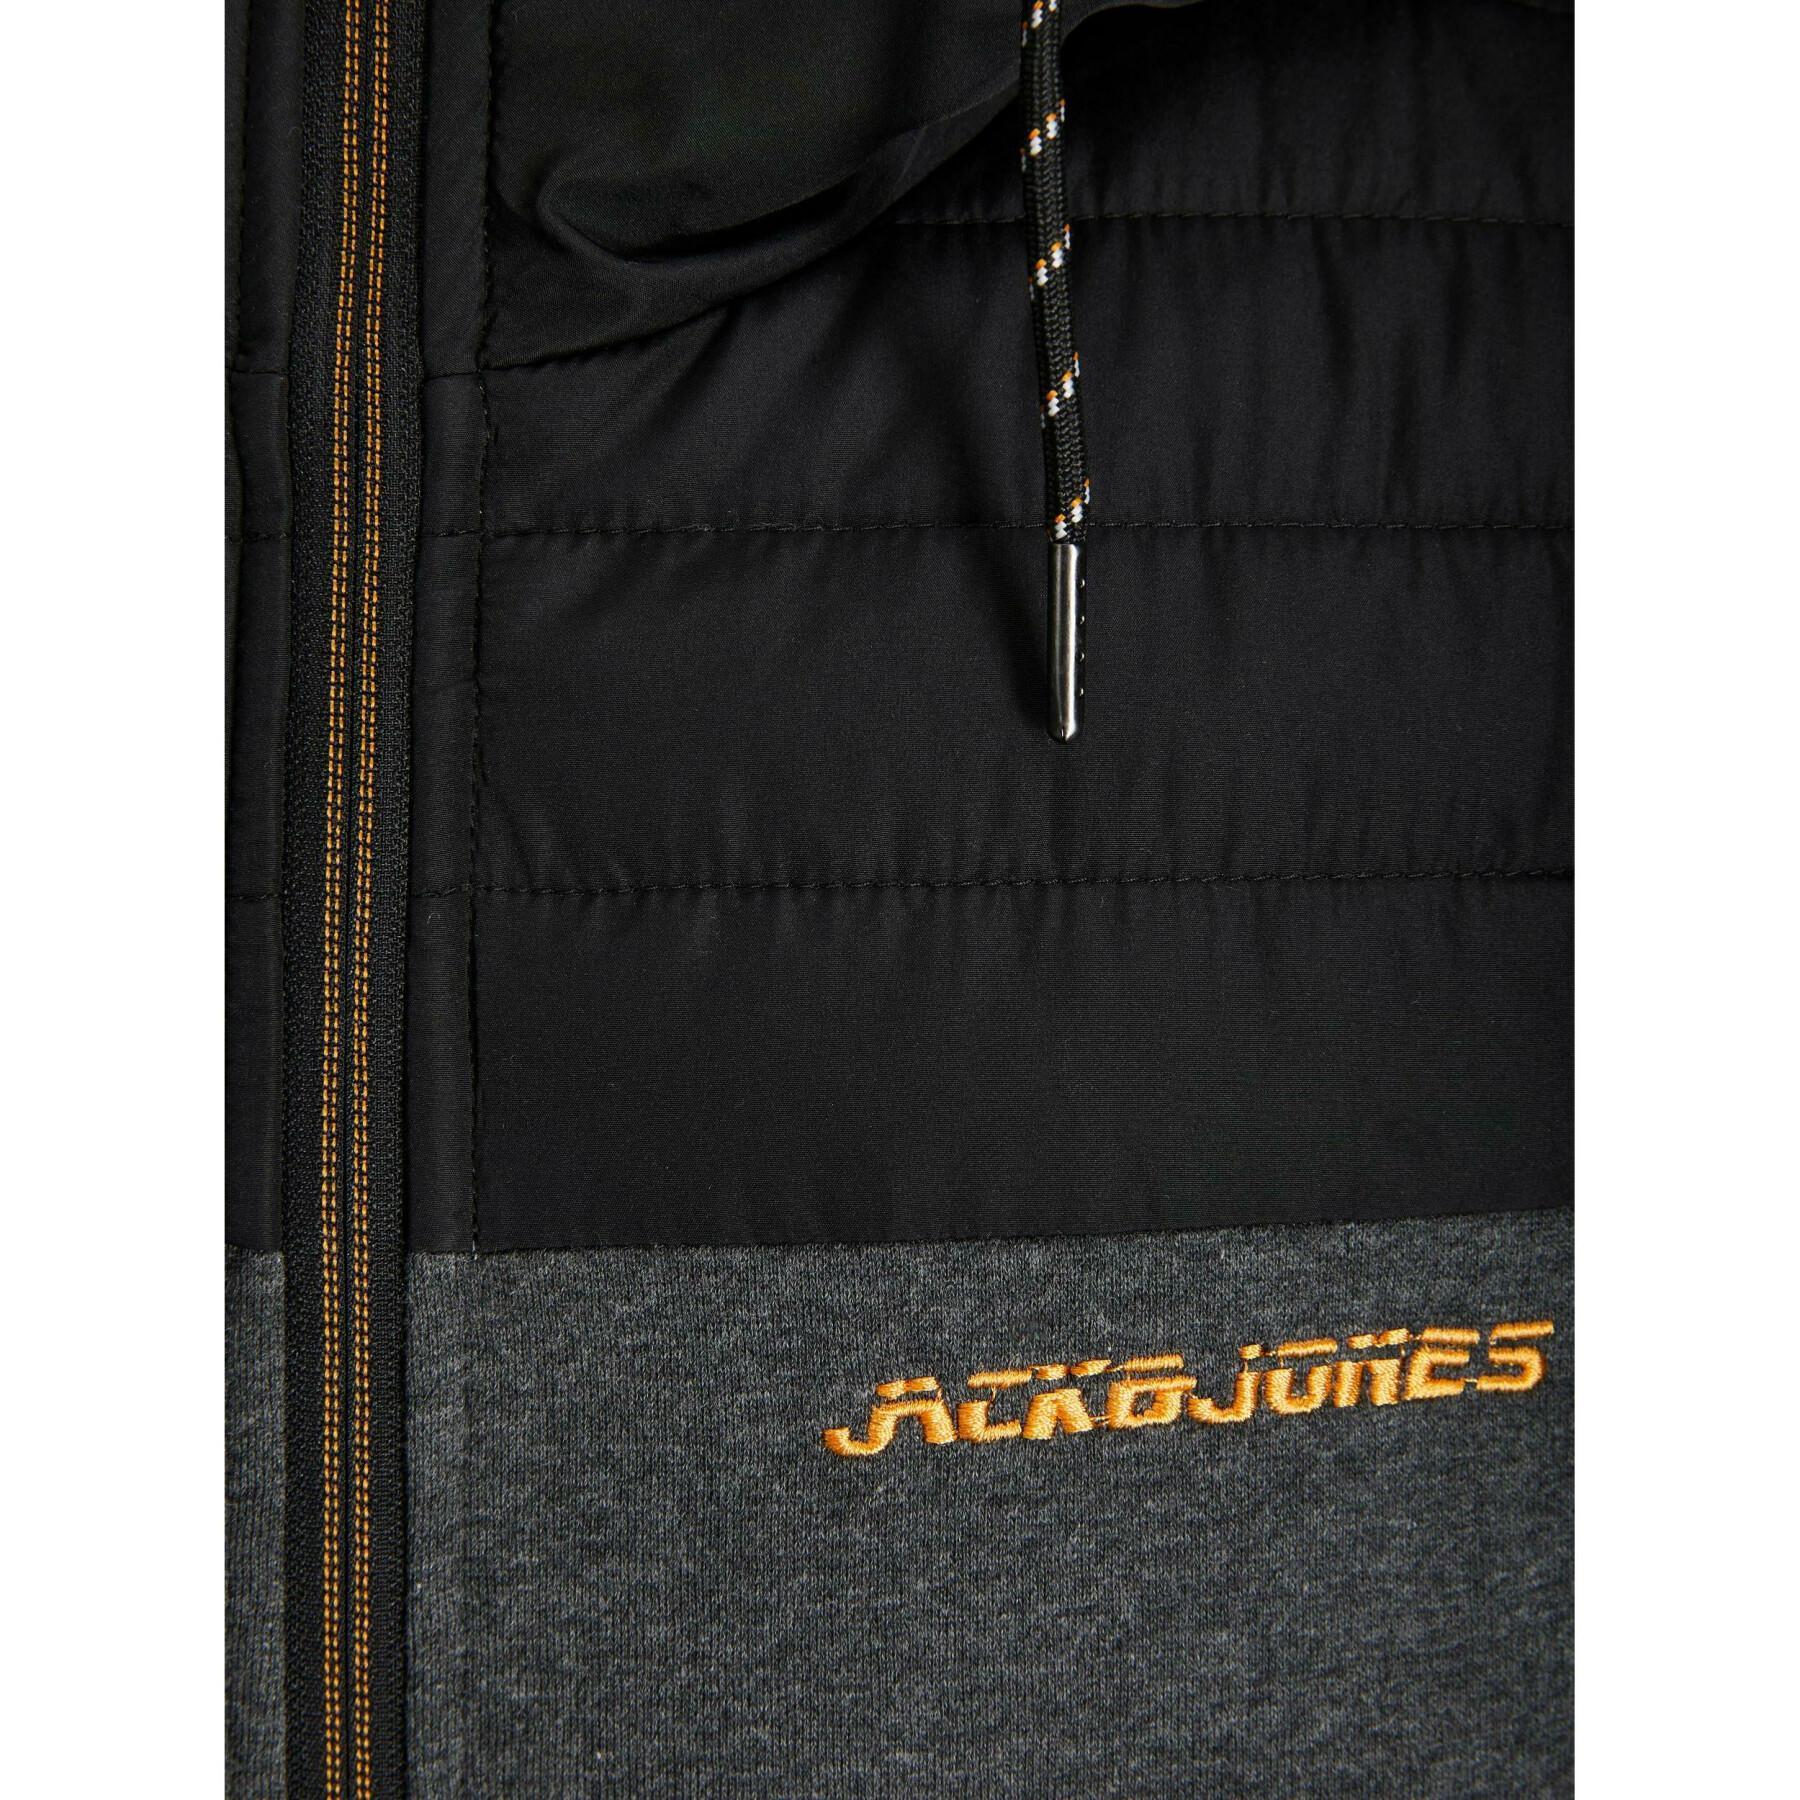 Mouwloze jas met capuchon Jack & Jones